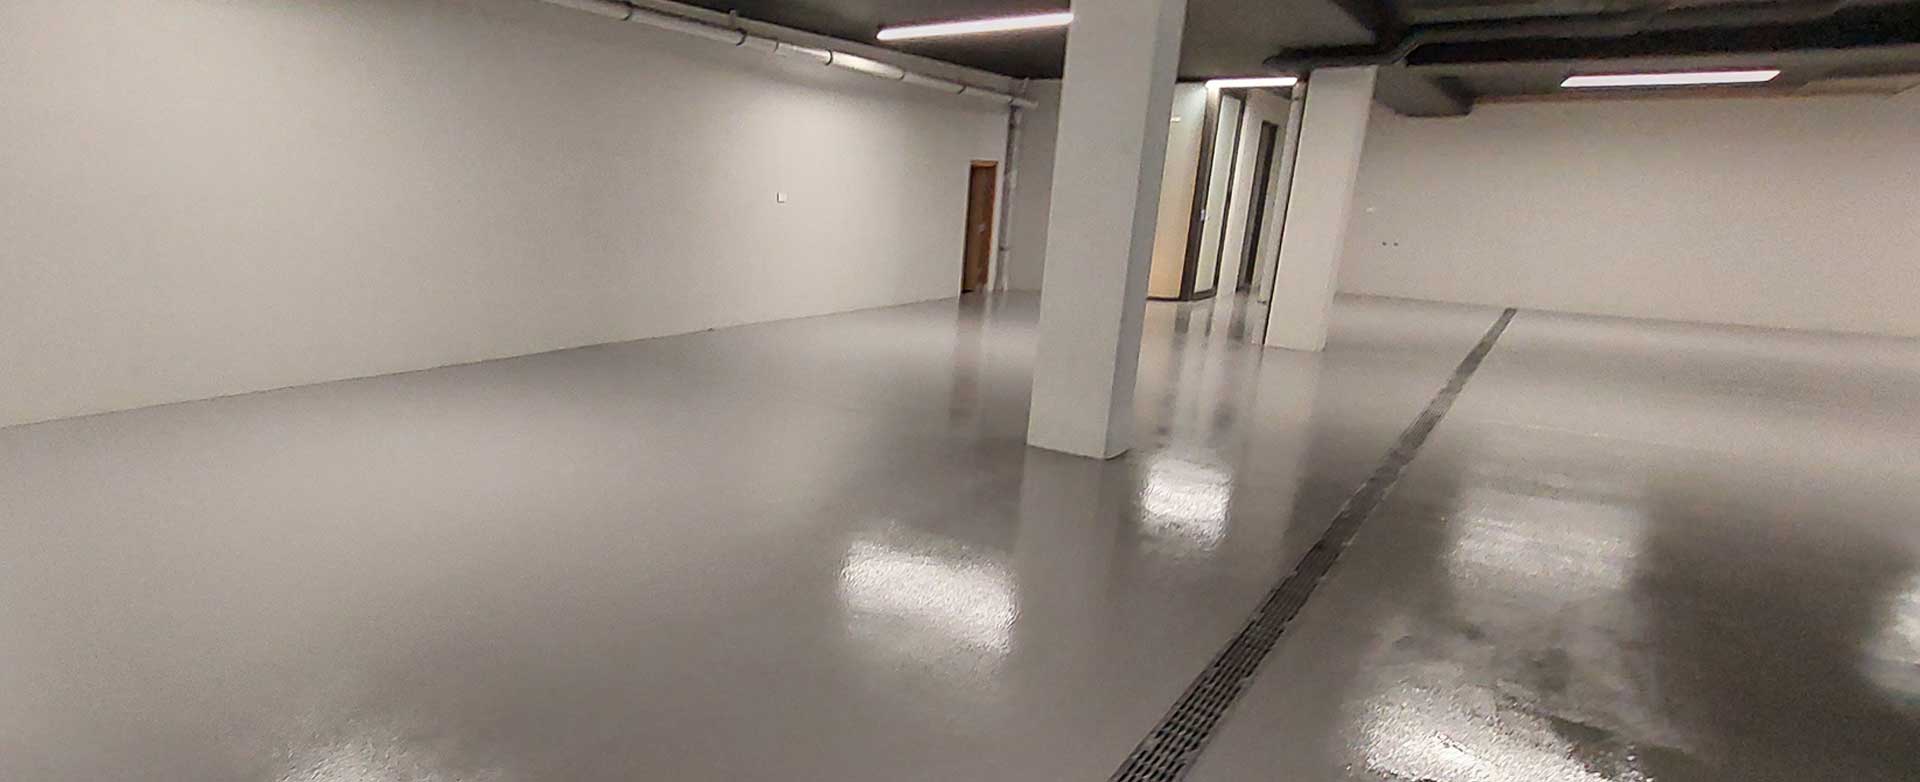 Commercial Floor Coatings BG Image